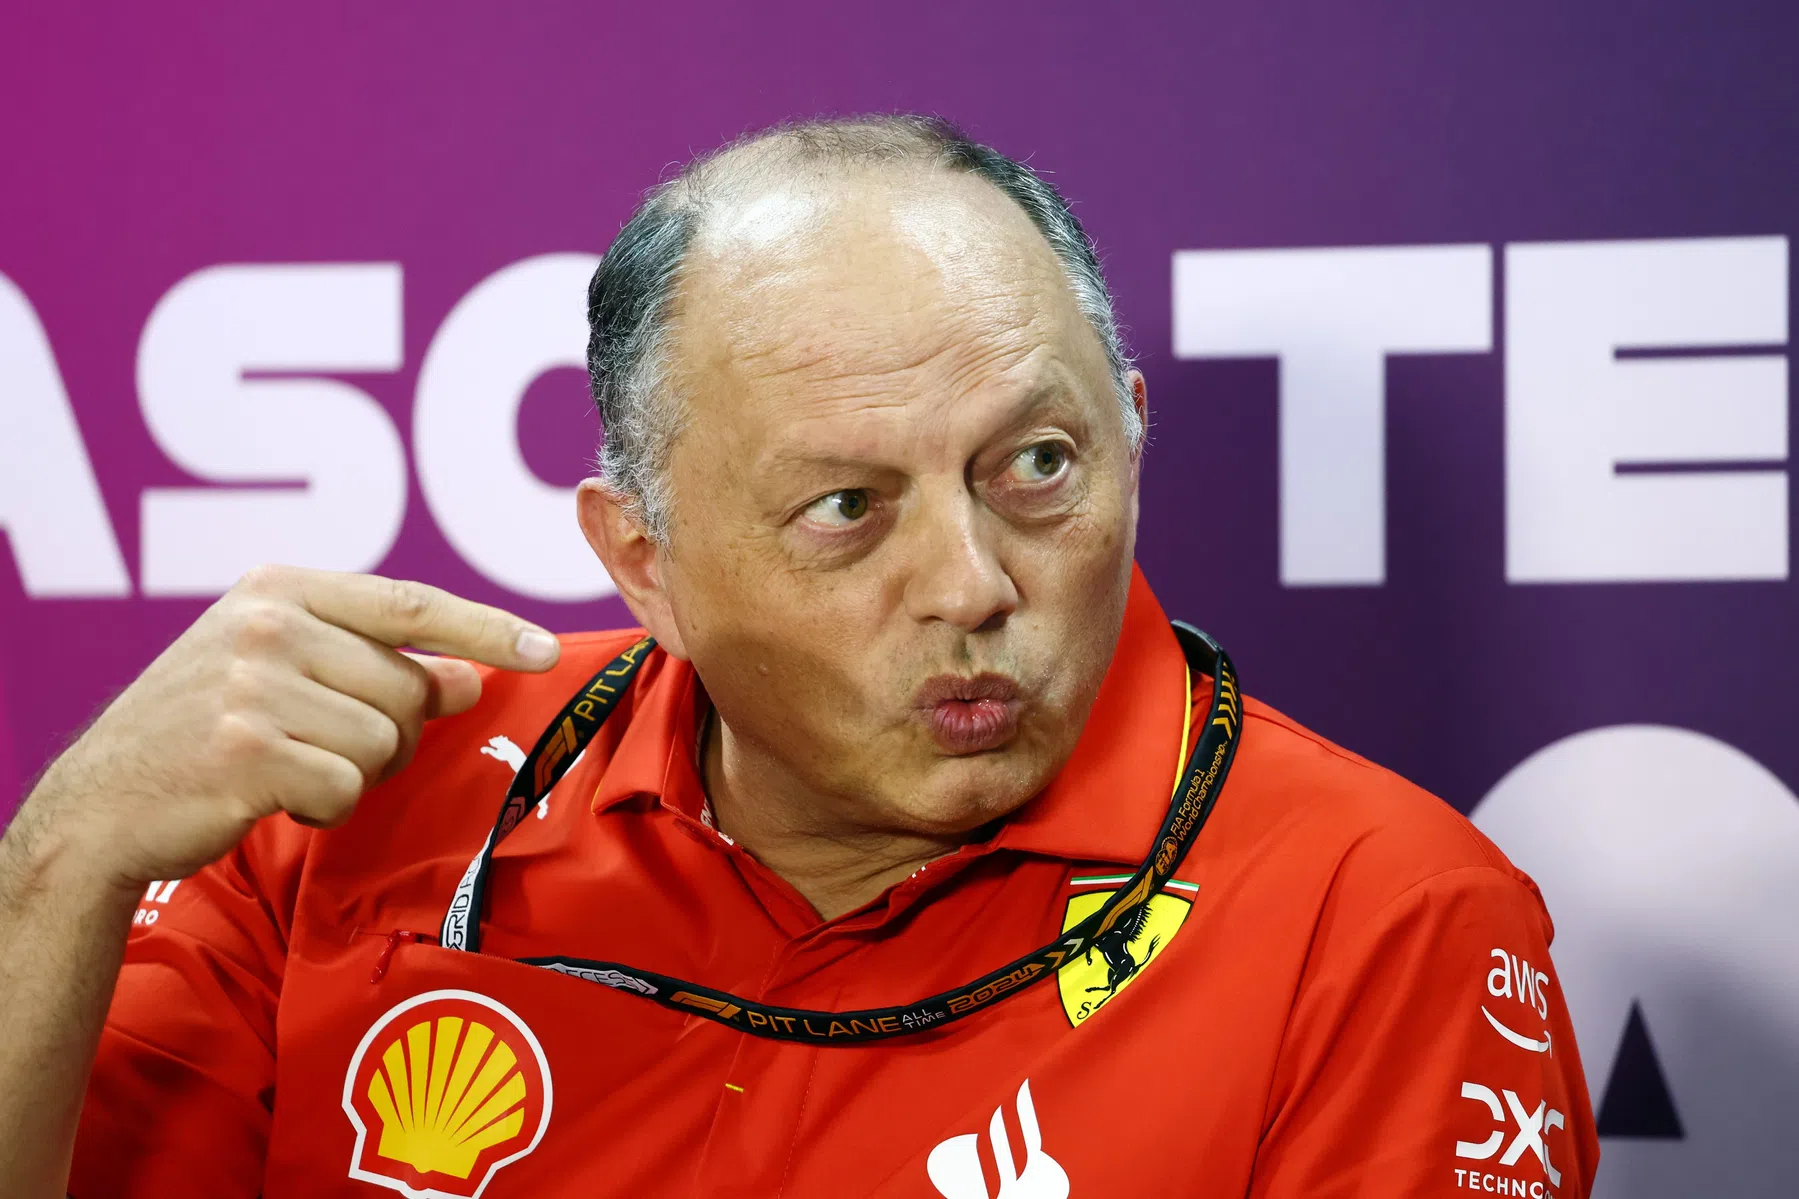 Vasseur warns Ferrari F1 drivers are in top form